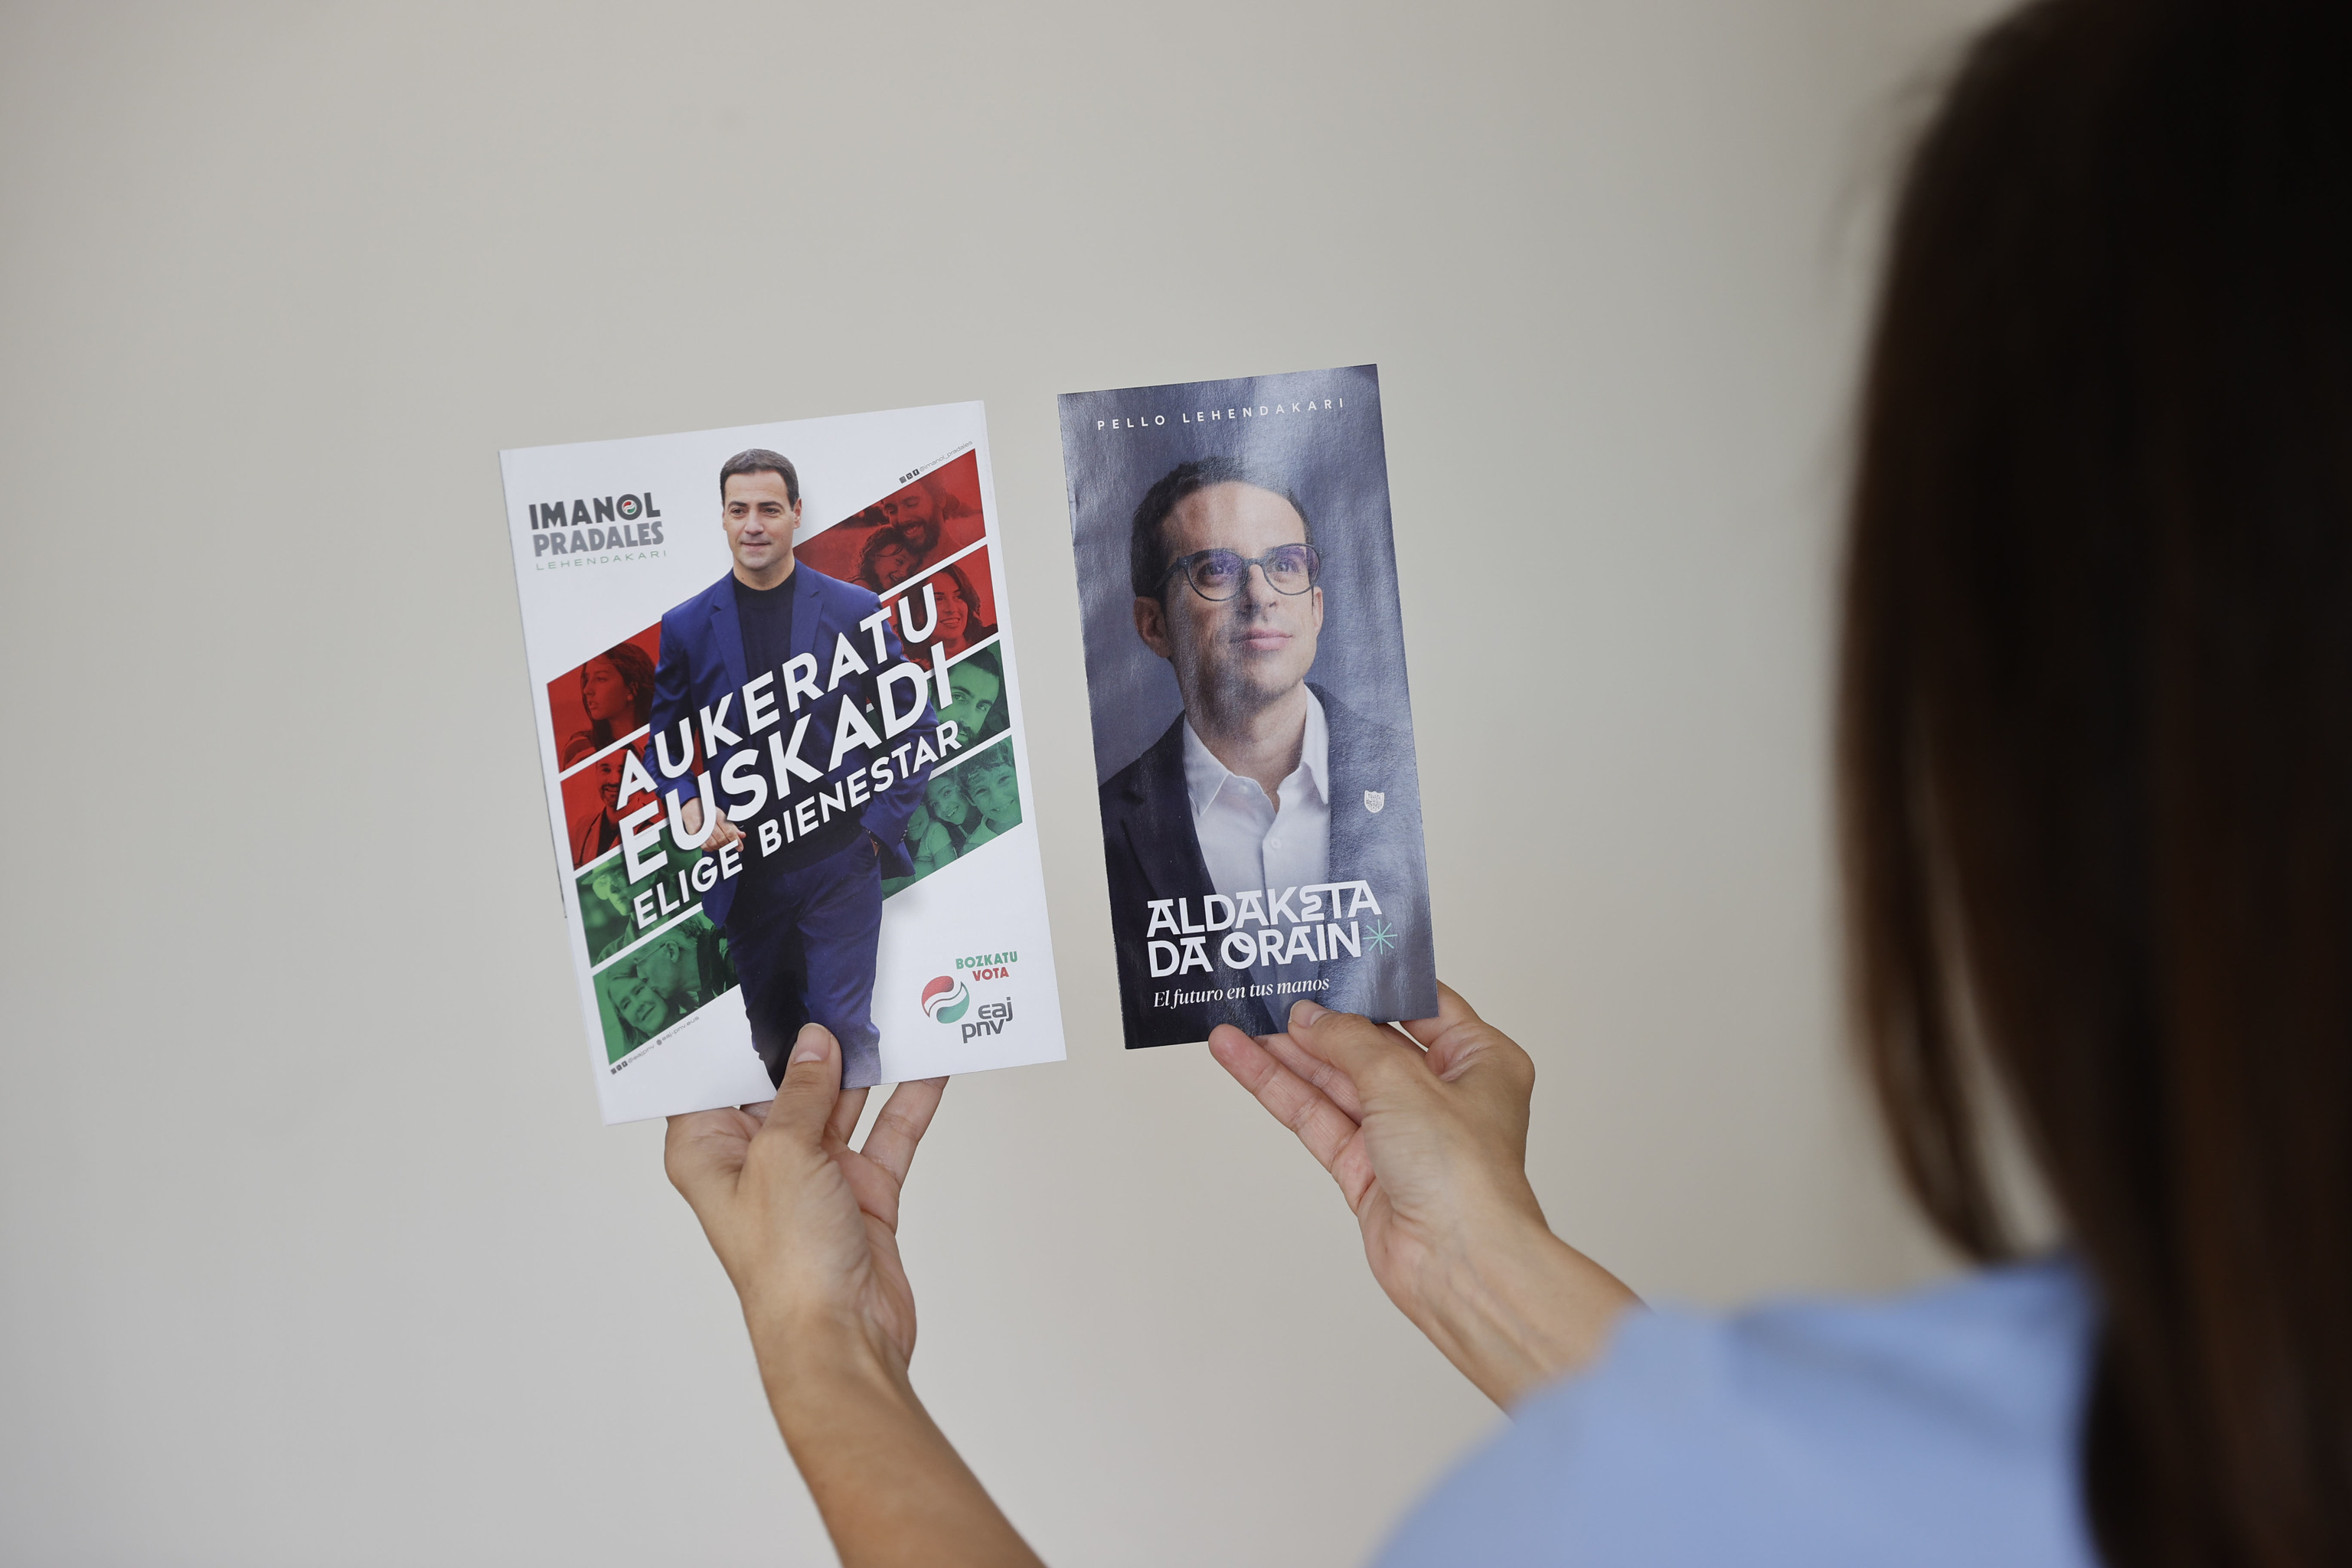 Las agencias confirman un 'rating' estelar al País Vasco sin esperar al voto: "Tiene el Cupo y apoyo estatal si hace falta"